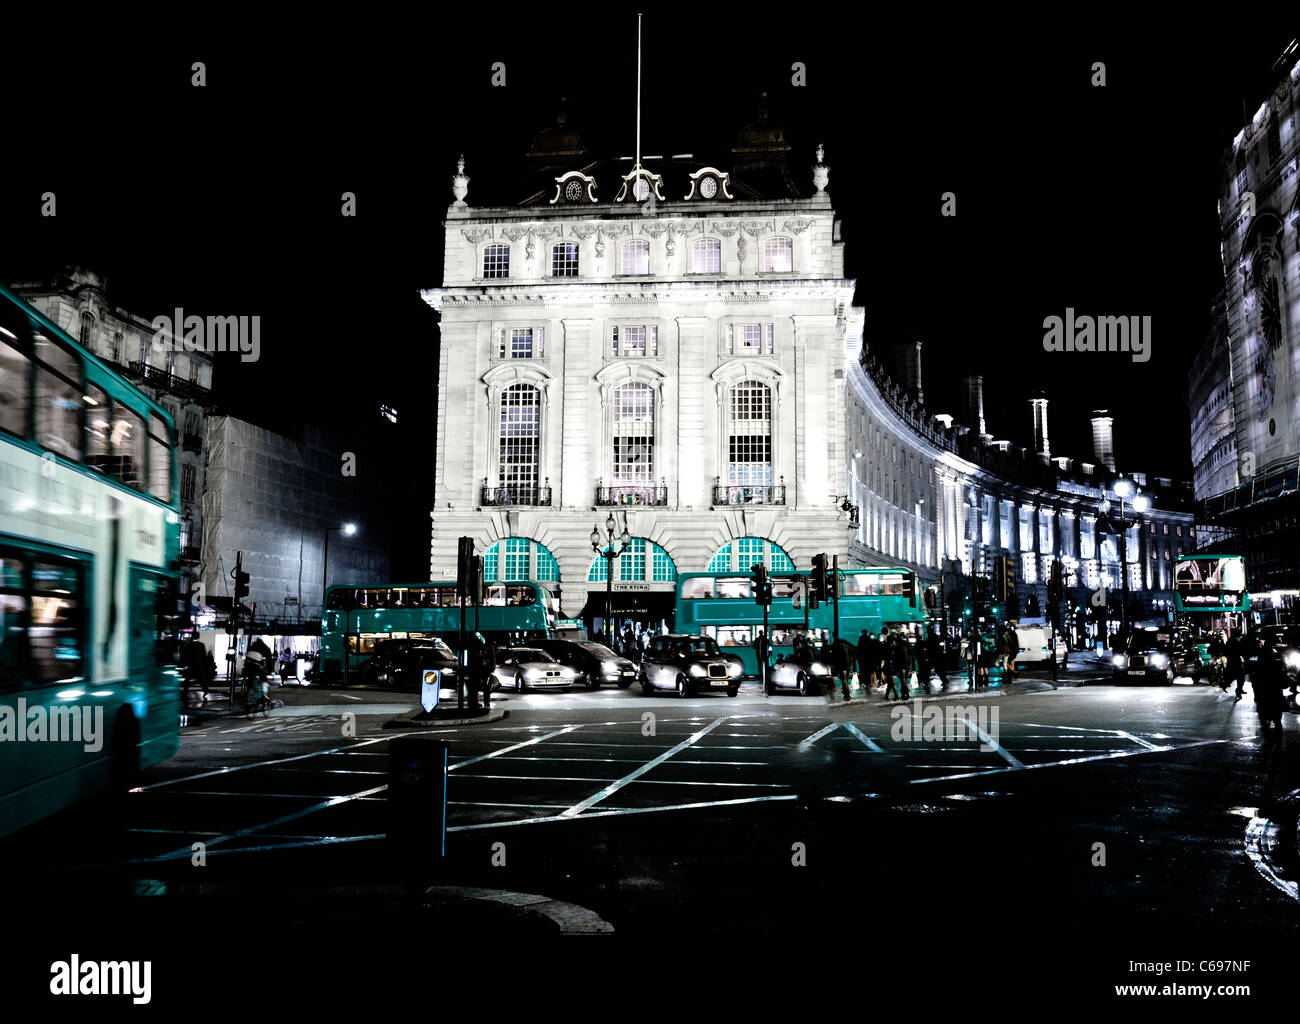 London Night Blue Bus Großbritannien britische klassische Doppeldecker Zeichen touristischen Wahrzeichen Europas Licht Kunst Konzept Blau Stockfoto